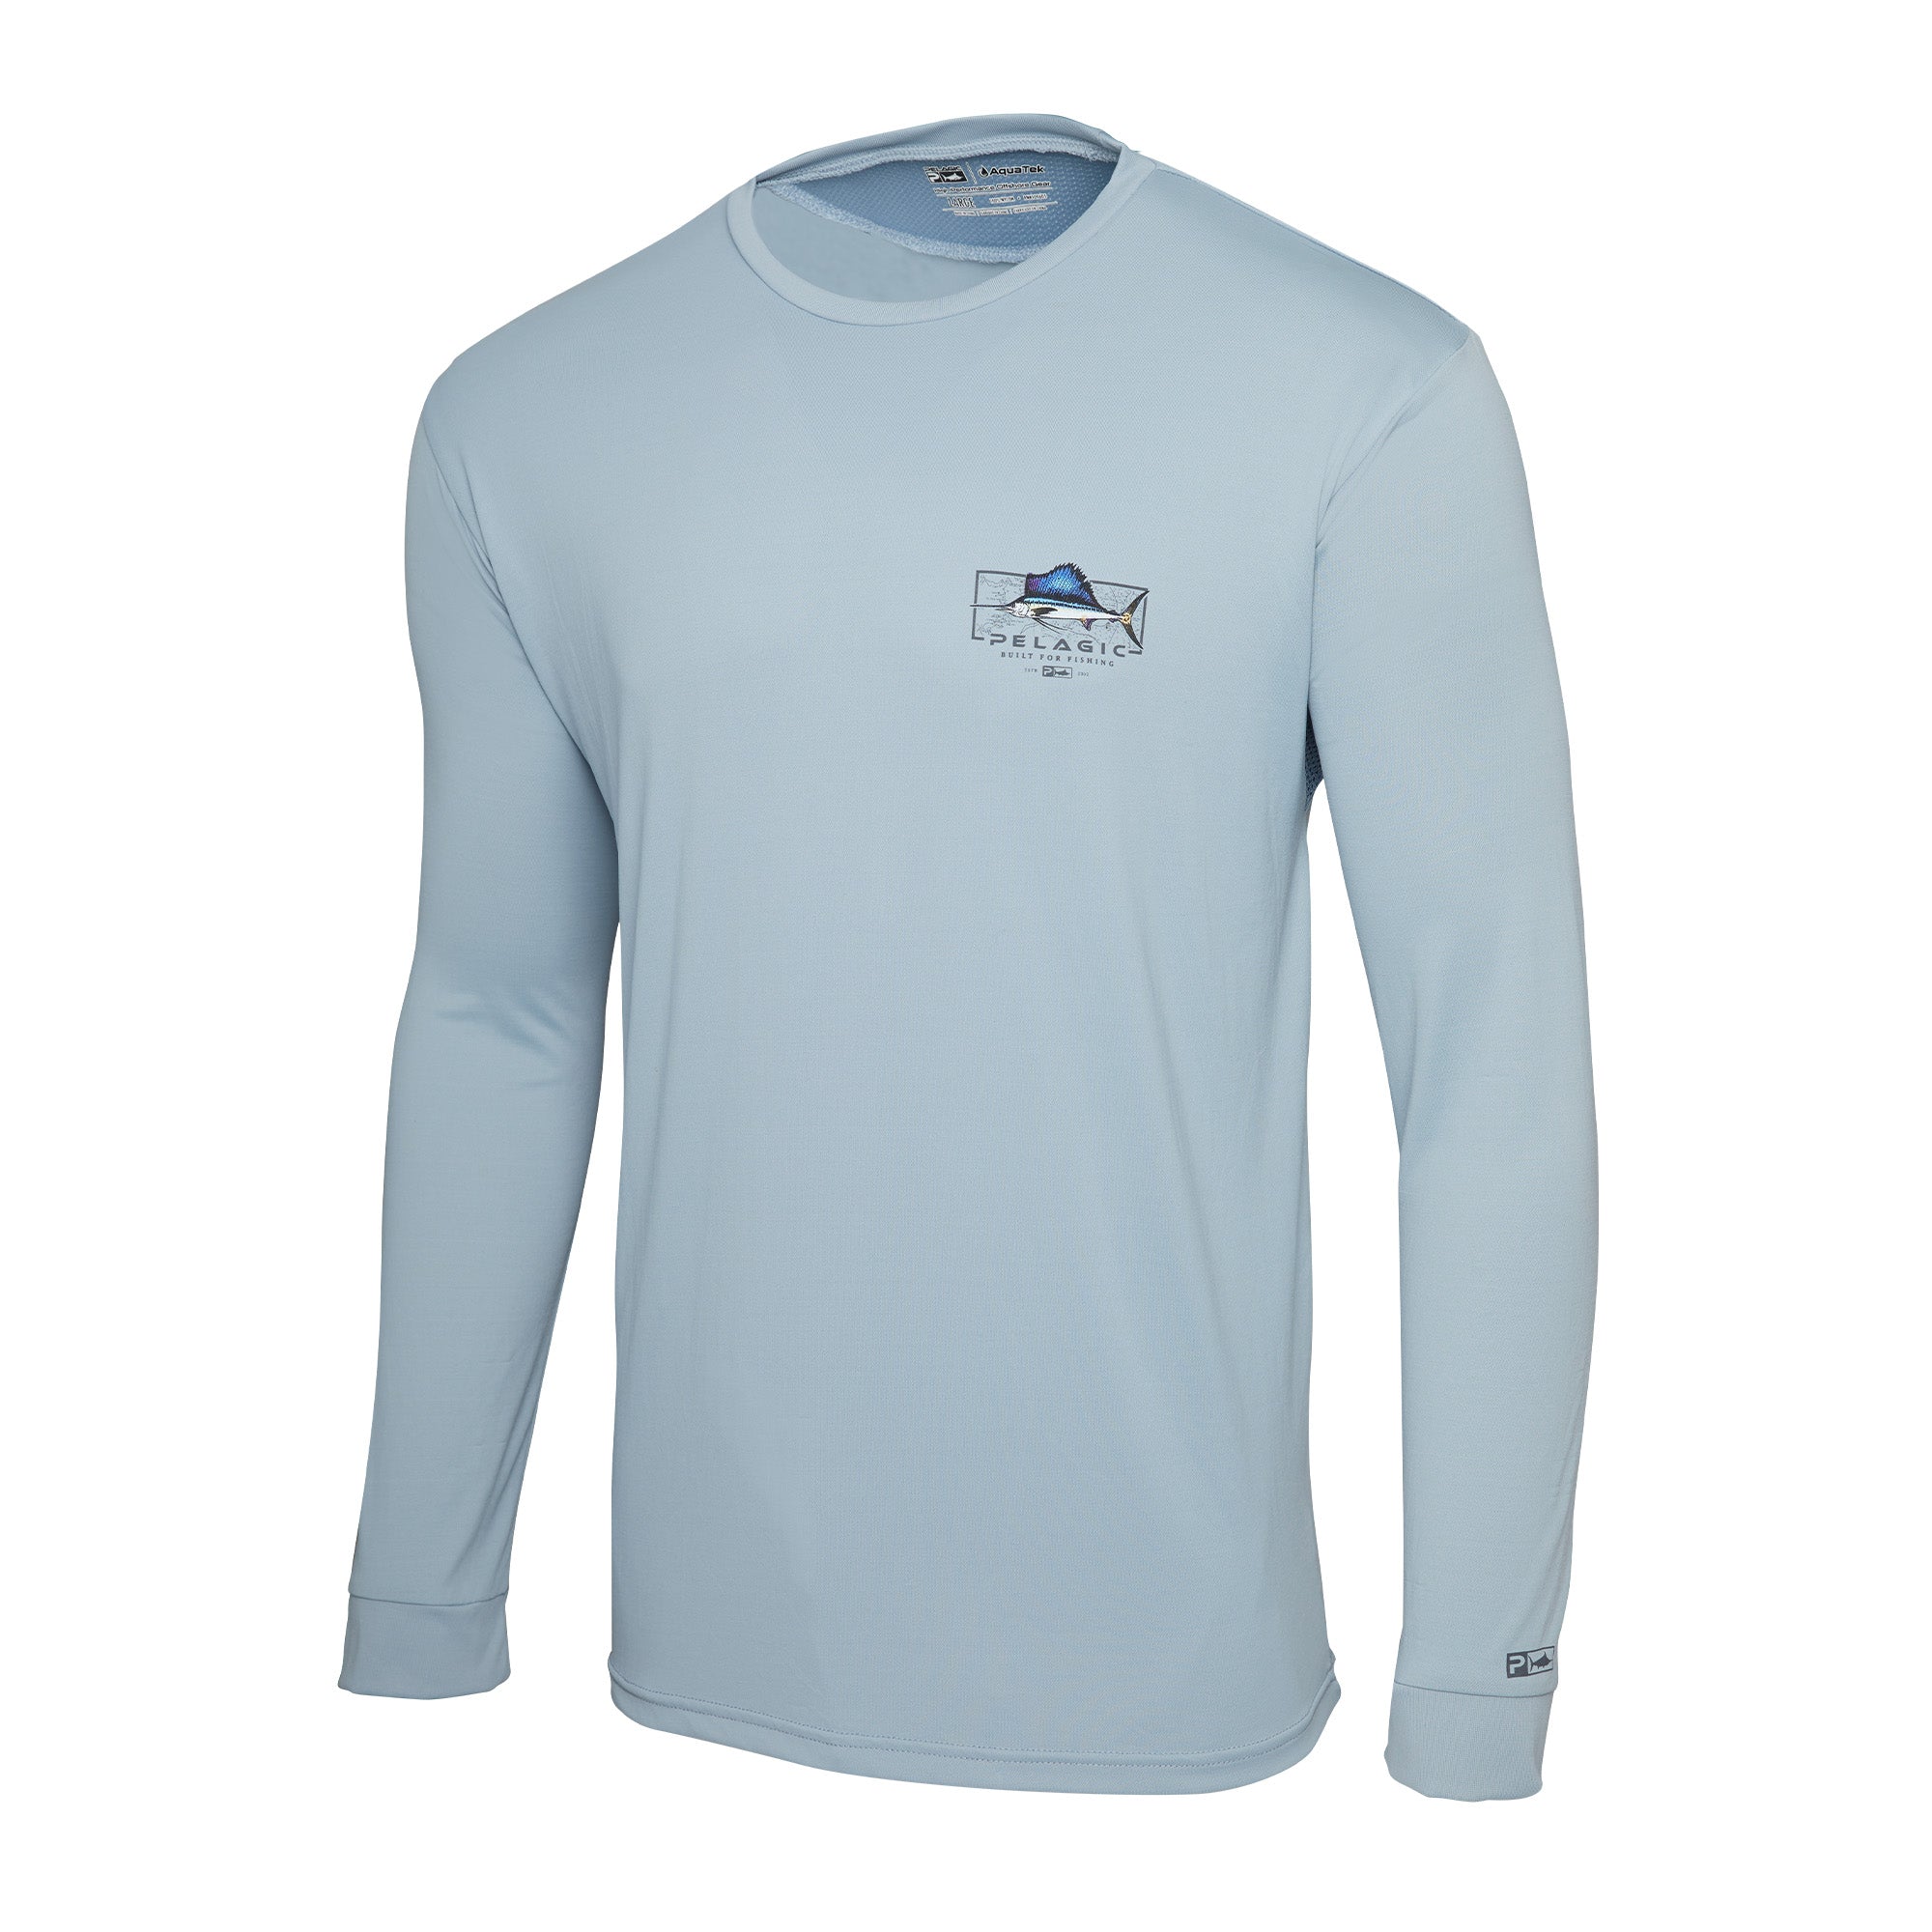 Aquatek Sailfish Mind Fishing Shirt